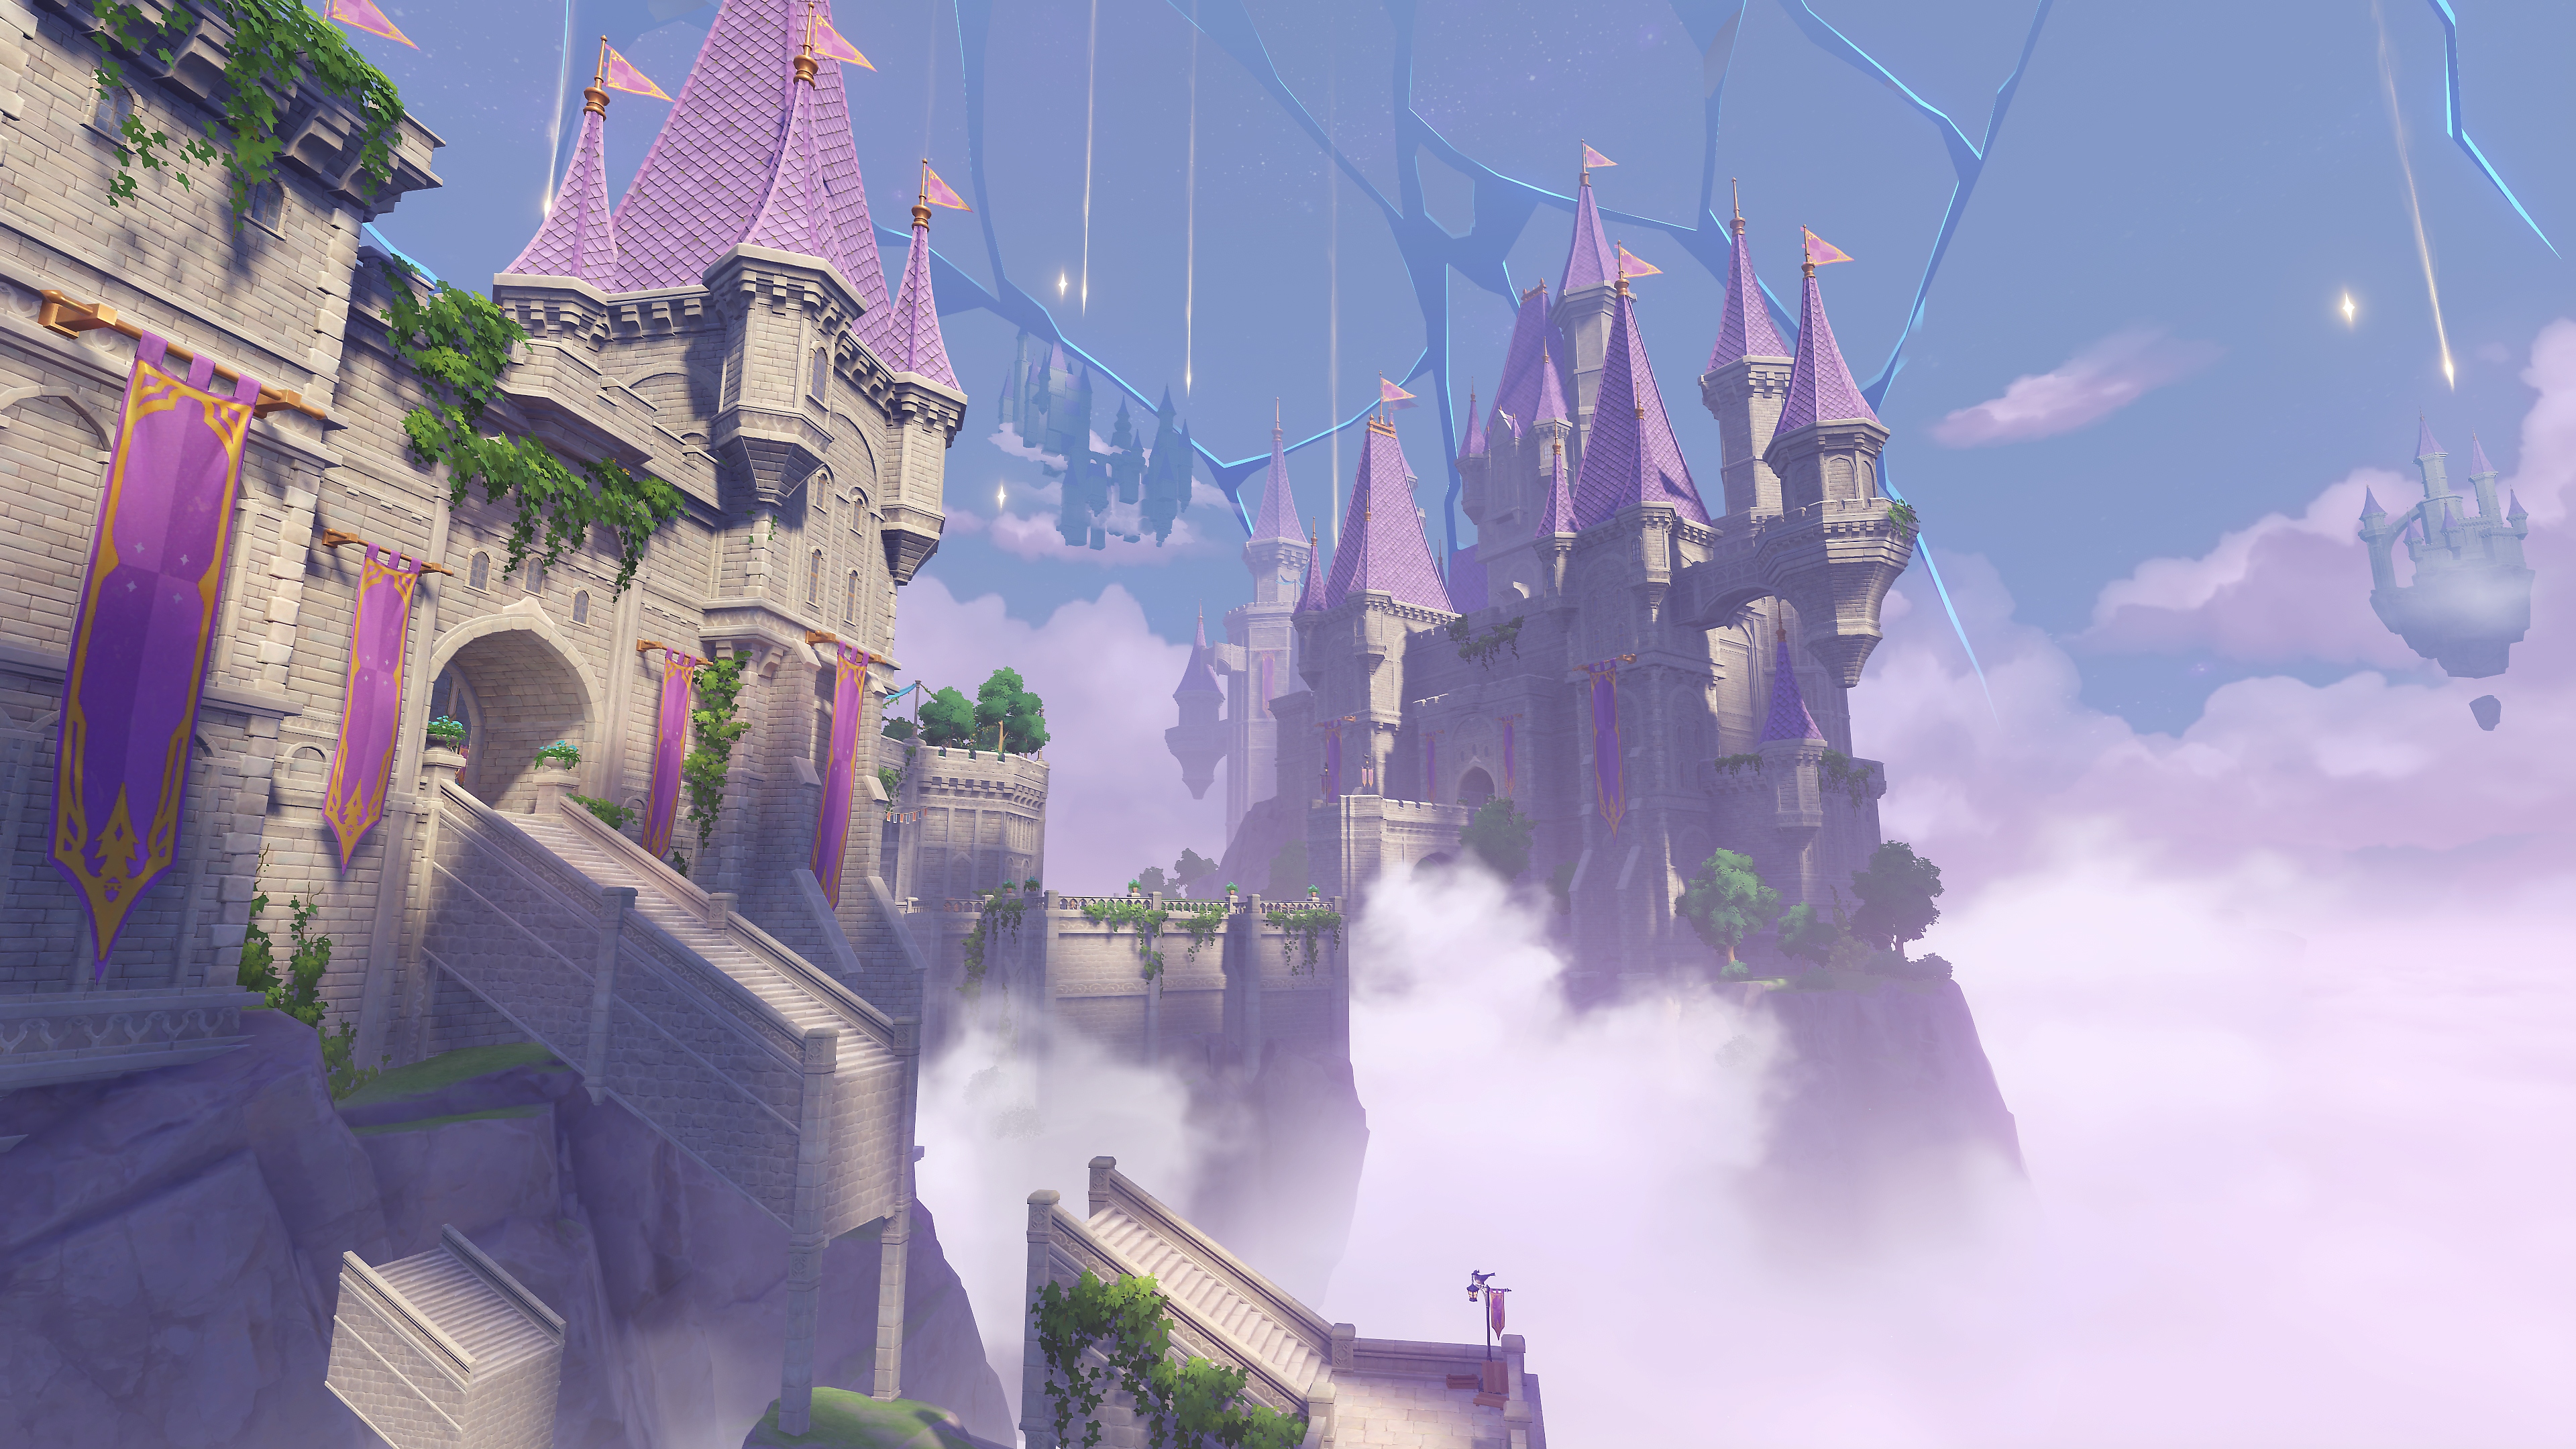 Impacto de GenShin: 2.8 Captura de pantalla de la actualización que muestra un castillo en las nubes